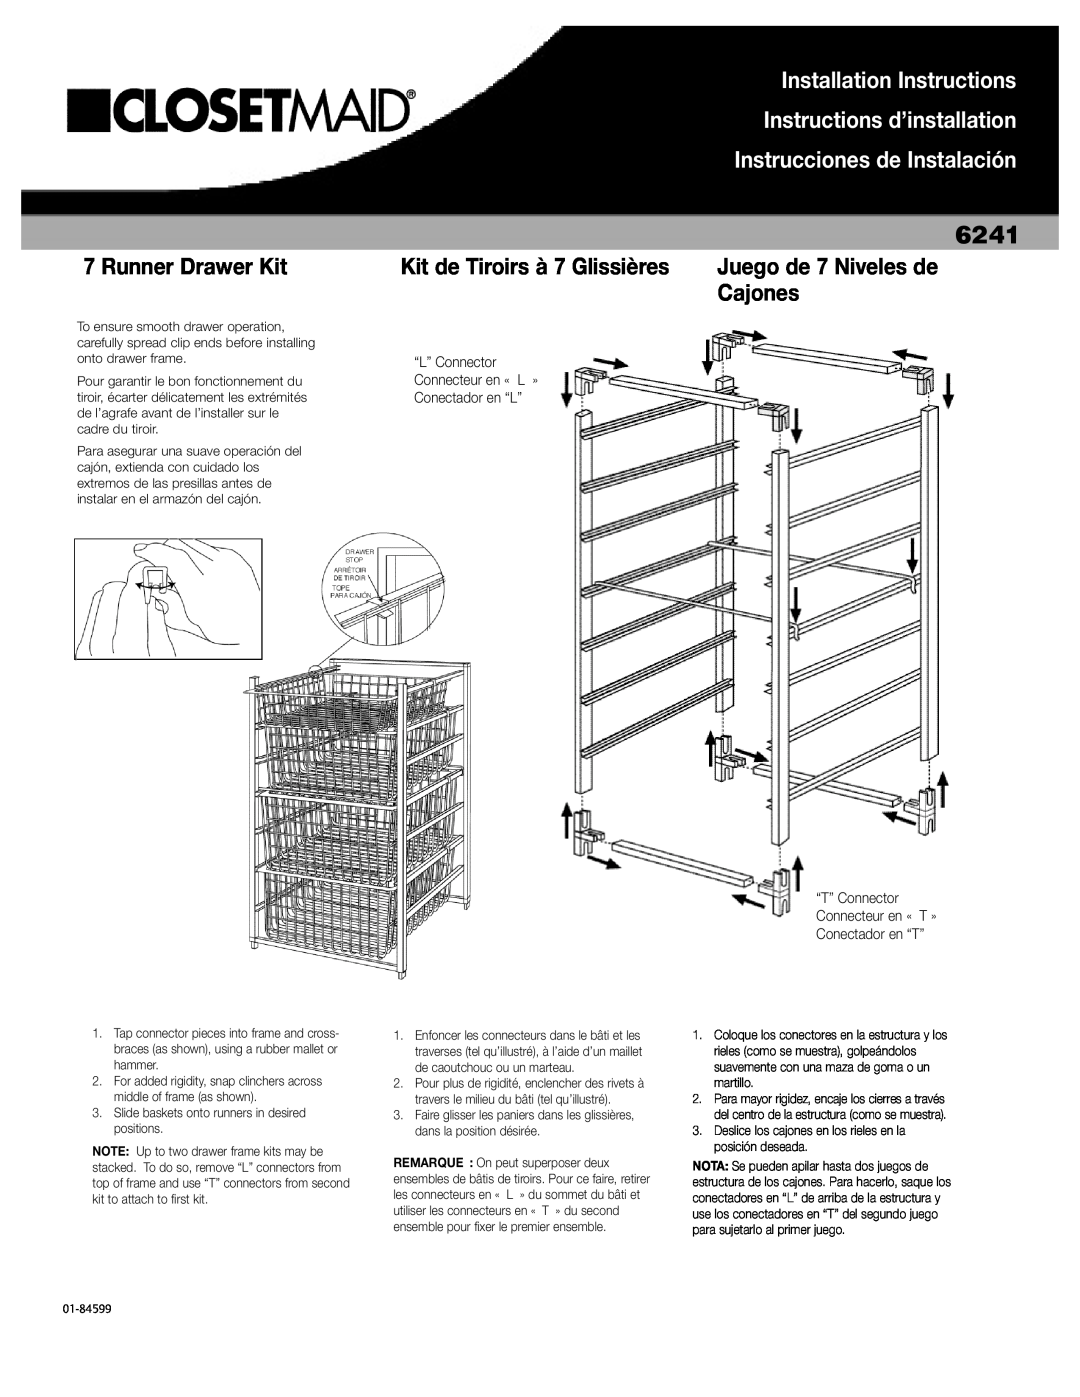 Closet Maid 6241 installation instructions Runner Drawer Kit, Installation Instructions, Instructions d’installation 